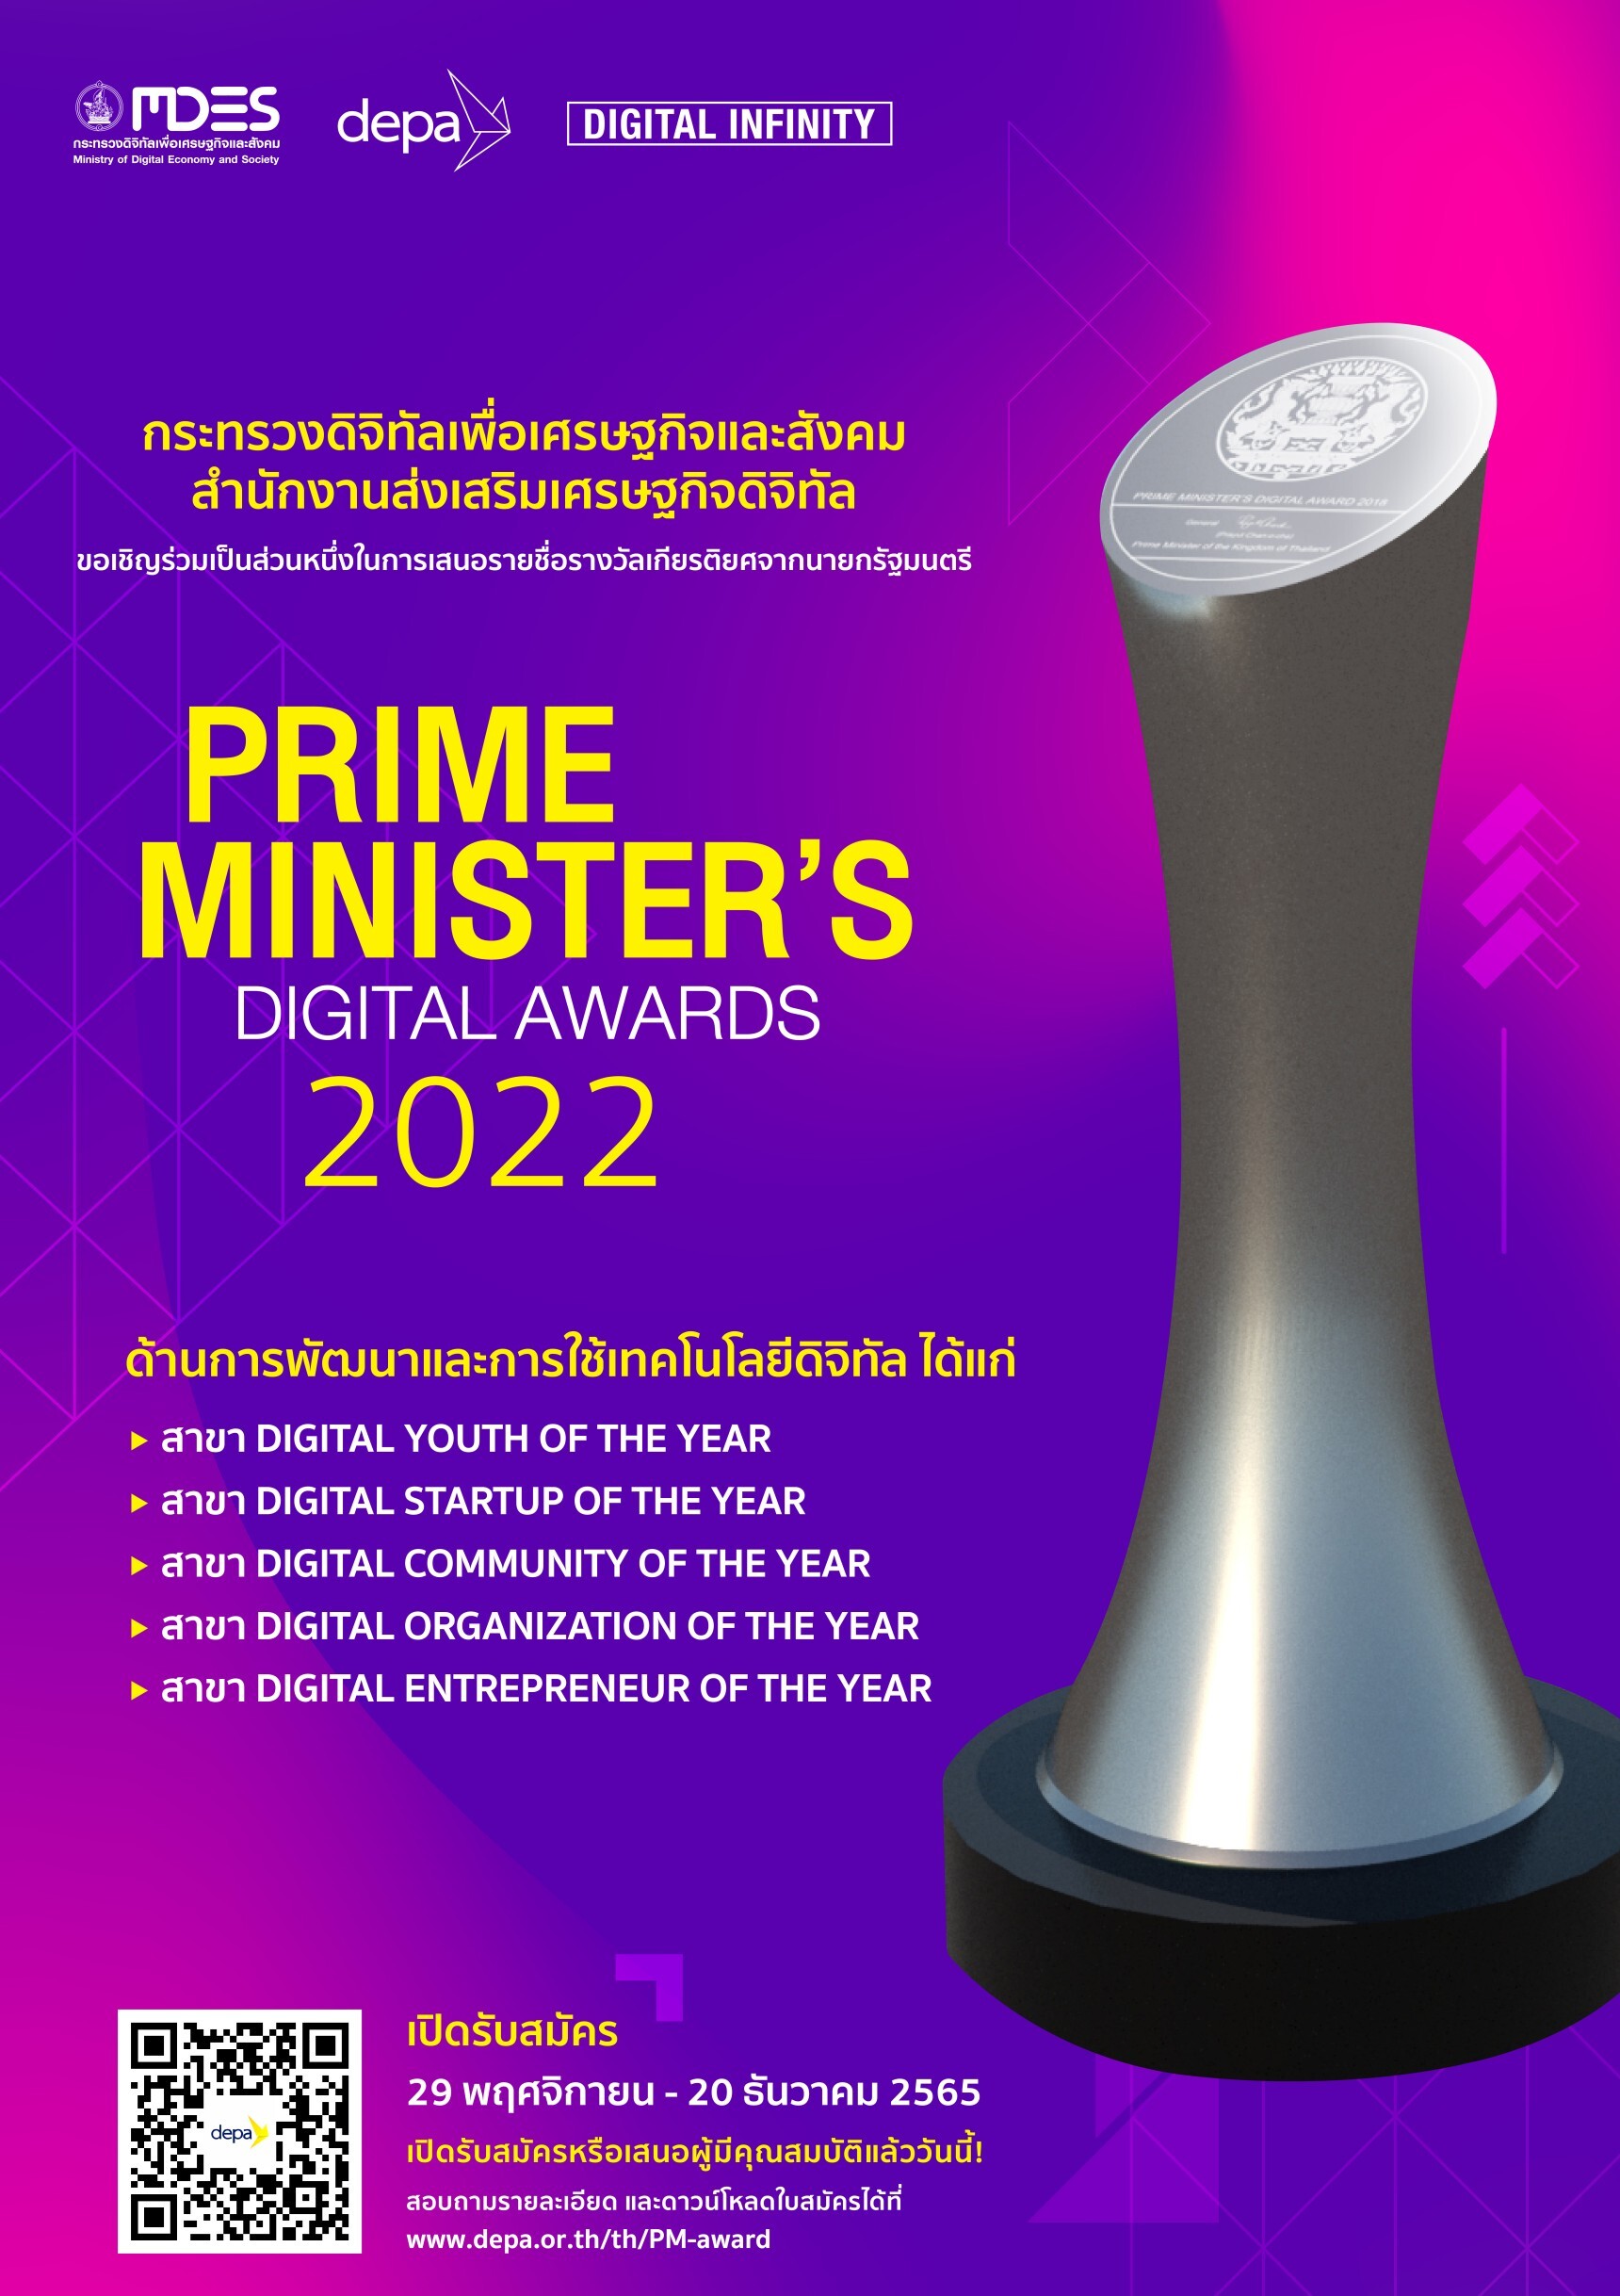 เปิดรับสมัครแล้ว ! Prime Minister's Digital Awards 2022 รางวัลเกียรติยศจากนายกรัฐมนตรี แด่ผู้สร้างสรรค์ผลงานเด่นด้านเทคโนโลยีและนวัตกรรมดิจิทัล